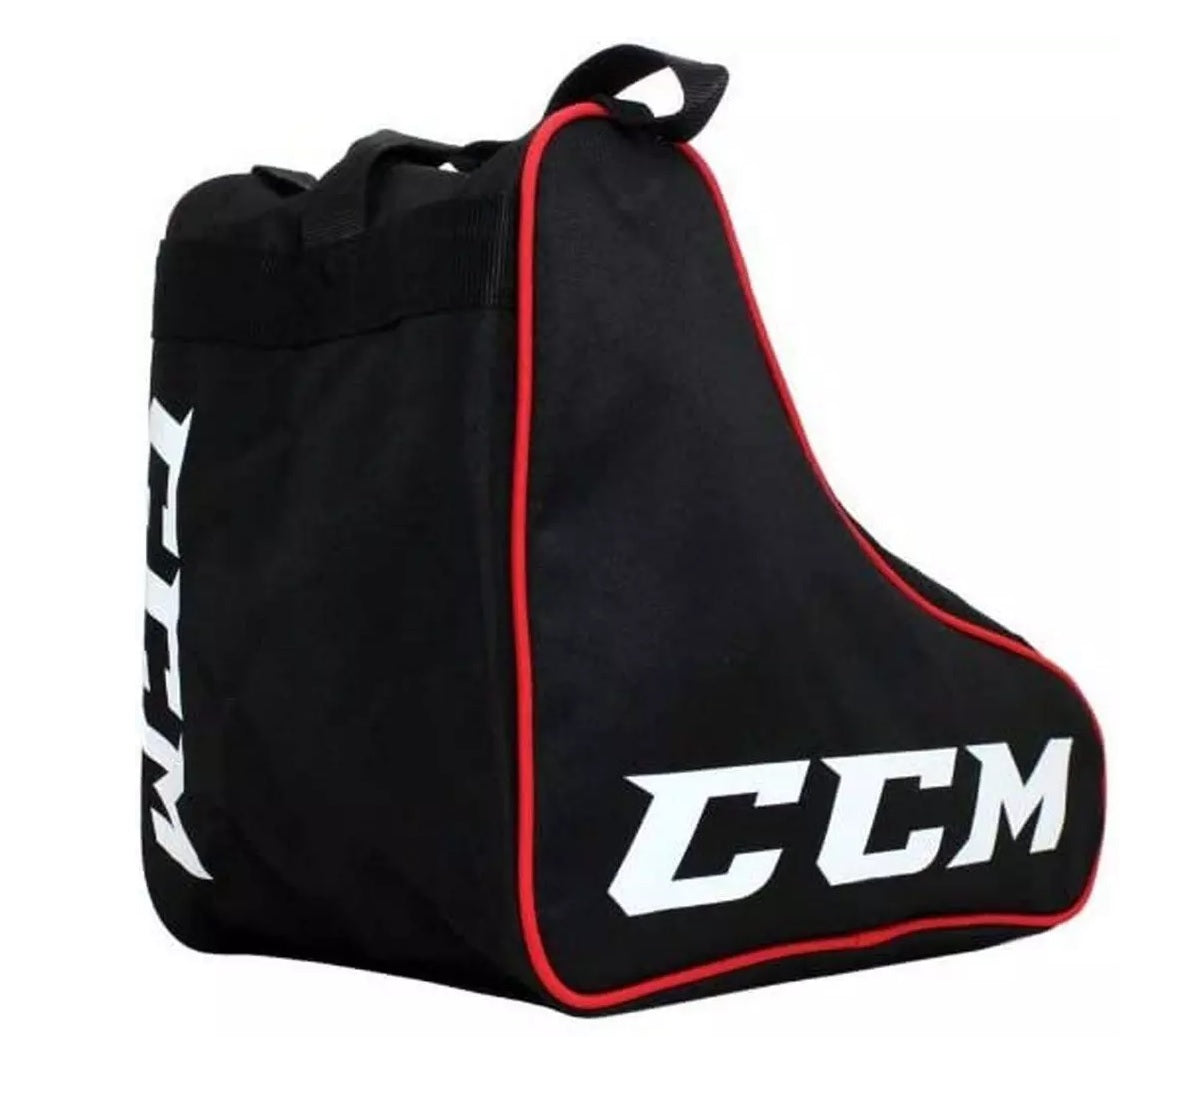 CCM Skate Bag Ice skate bag for ice skates black/red